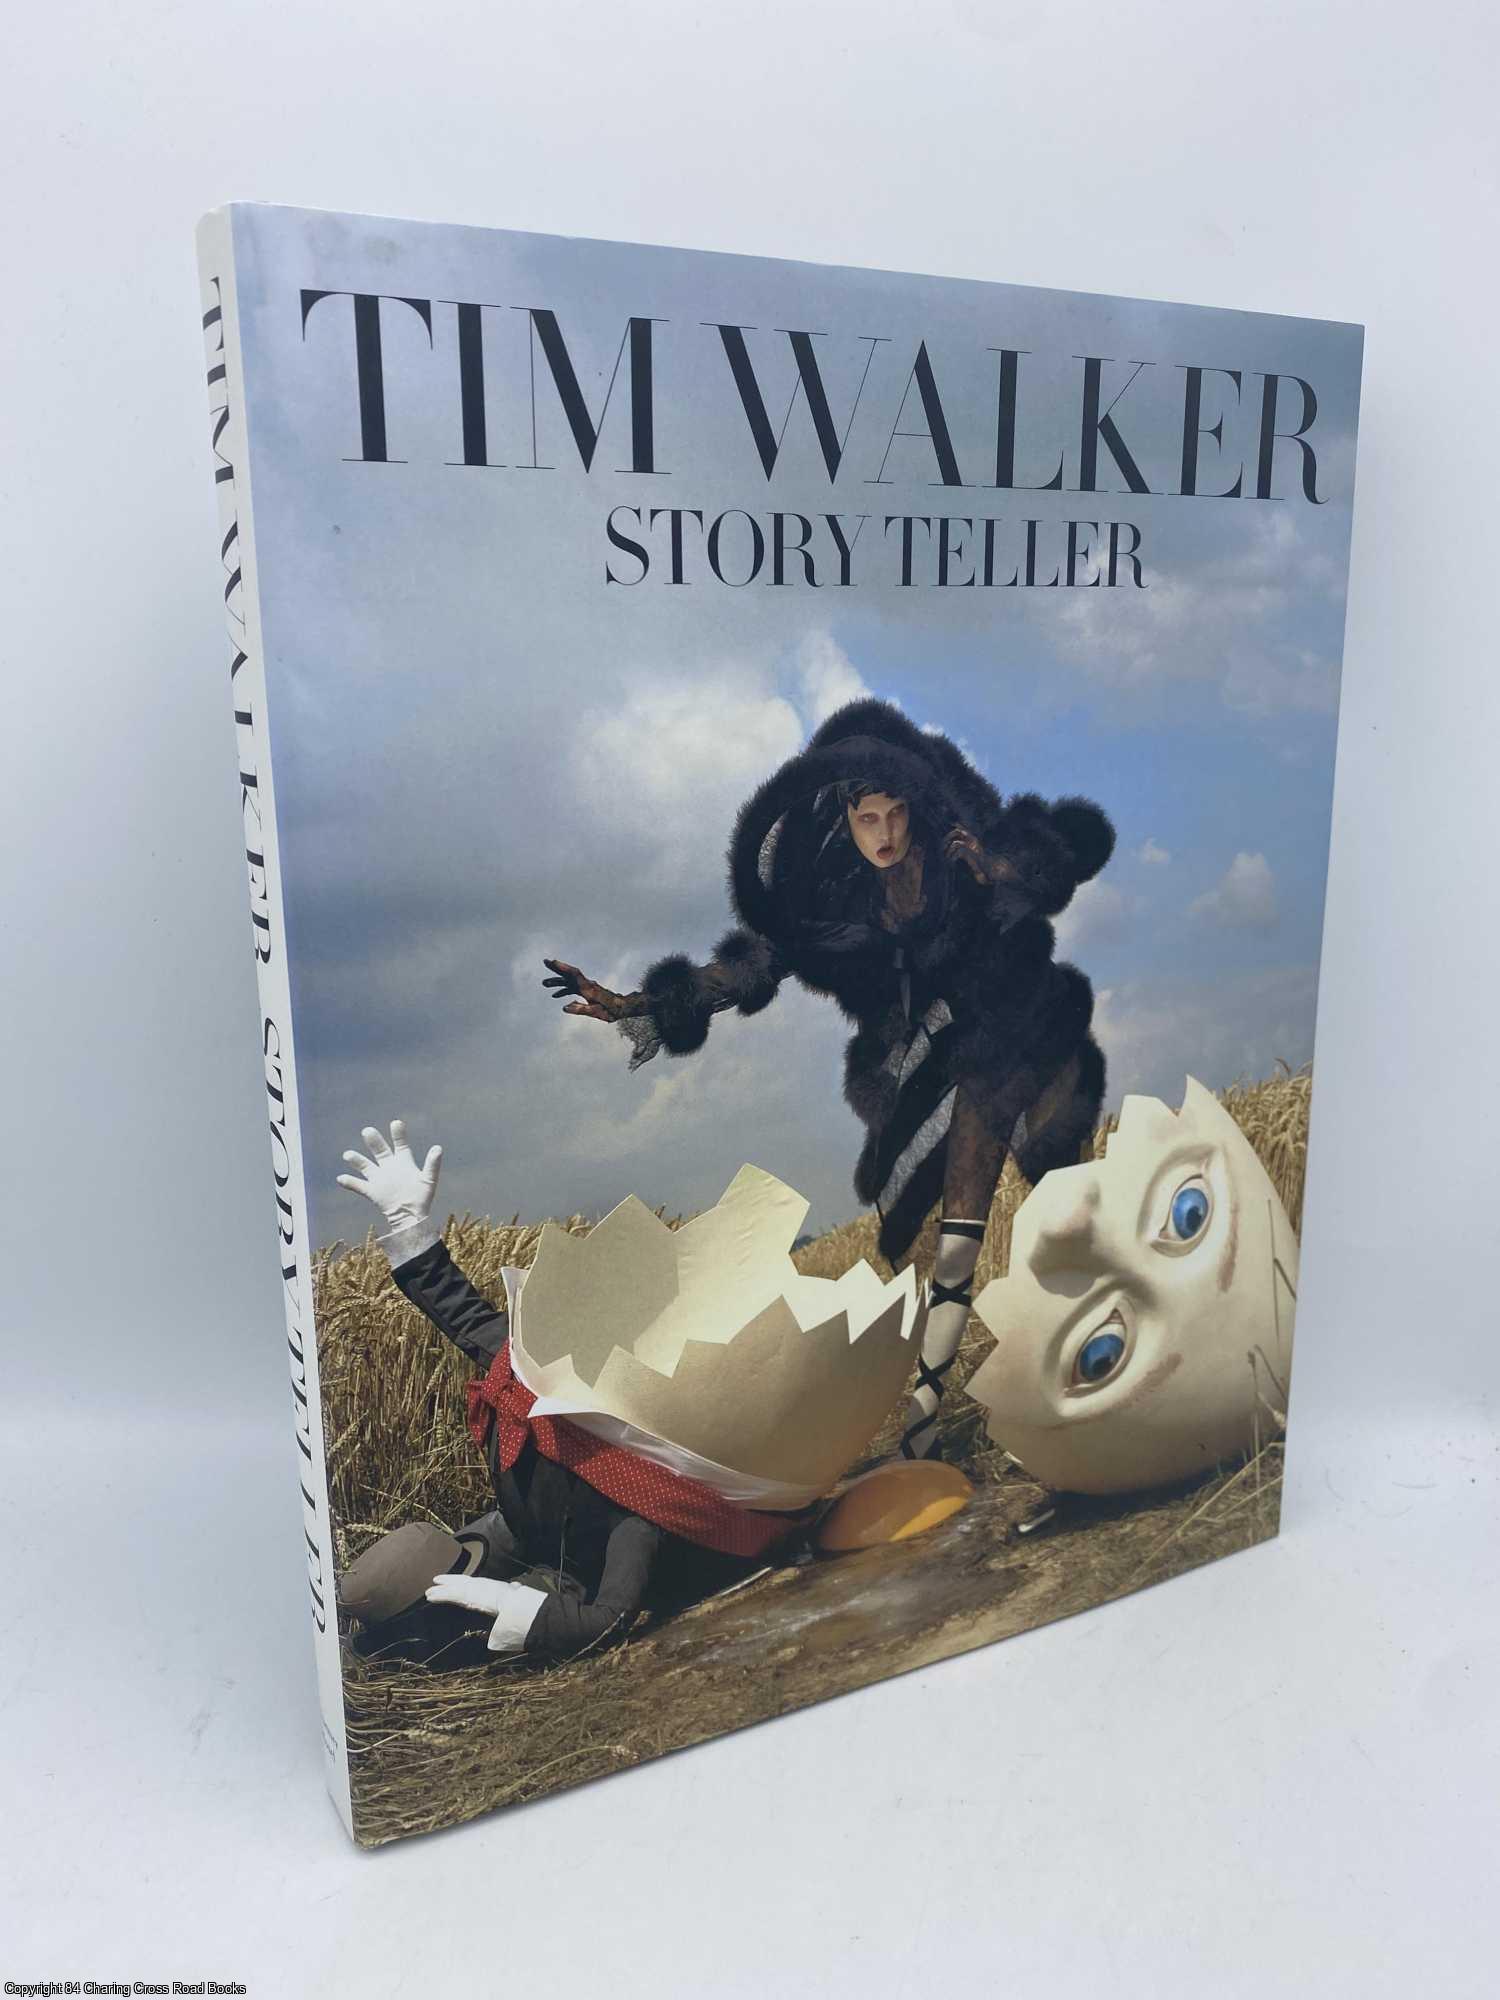 Tim Walker Story Teller by Tim Walker on 84 Charing Cross Rare Books